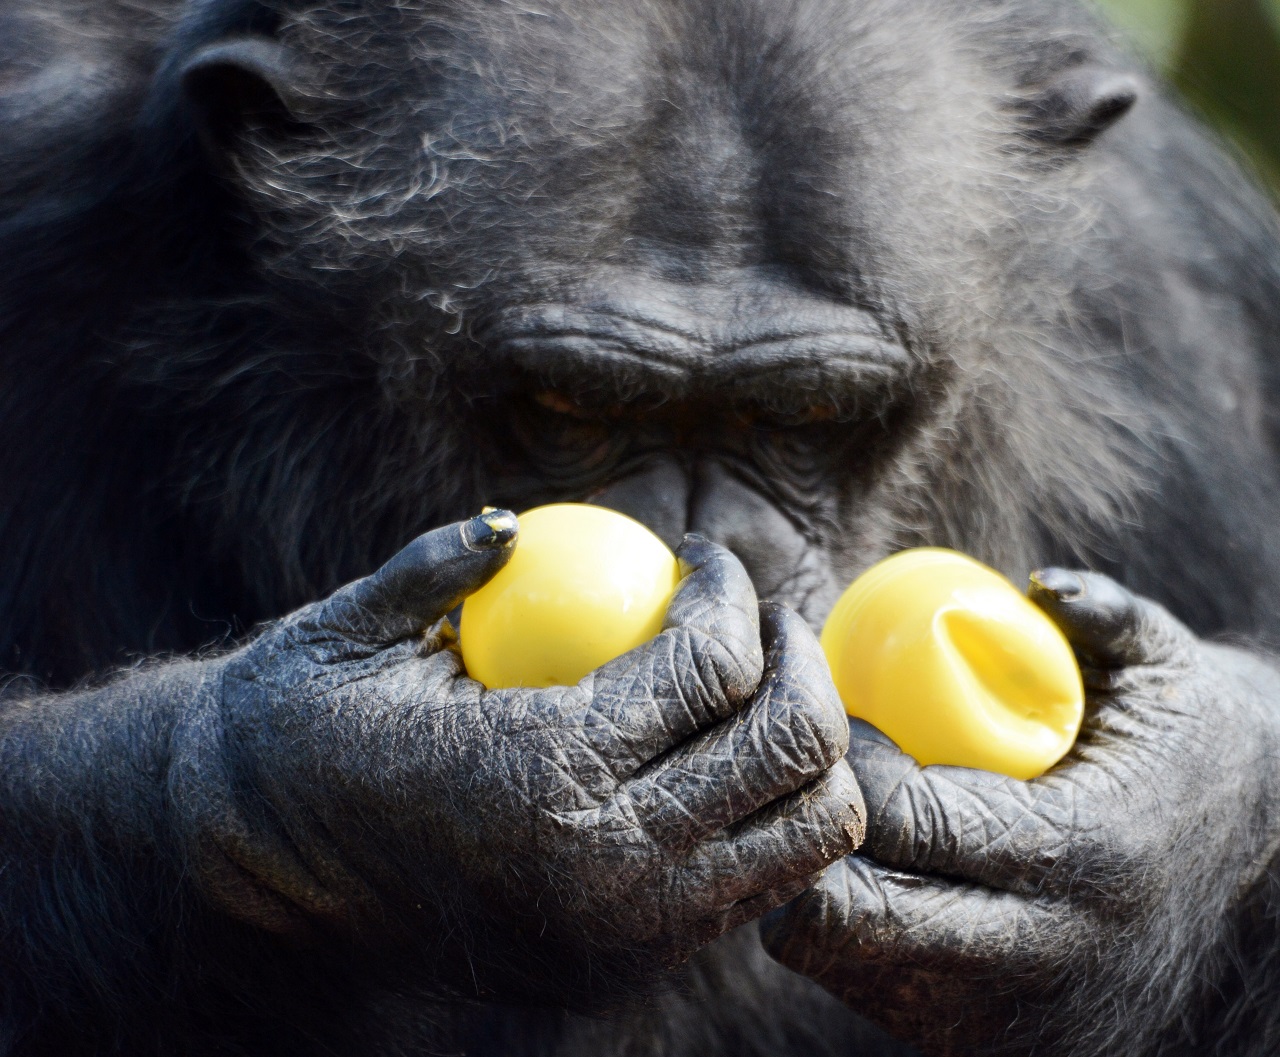 Okosabb vagy egy csimpánznál?